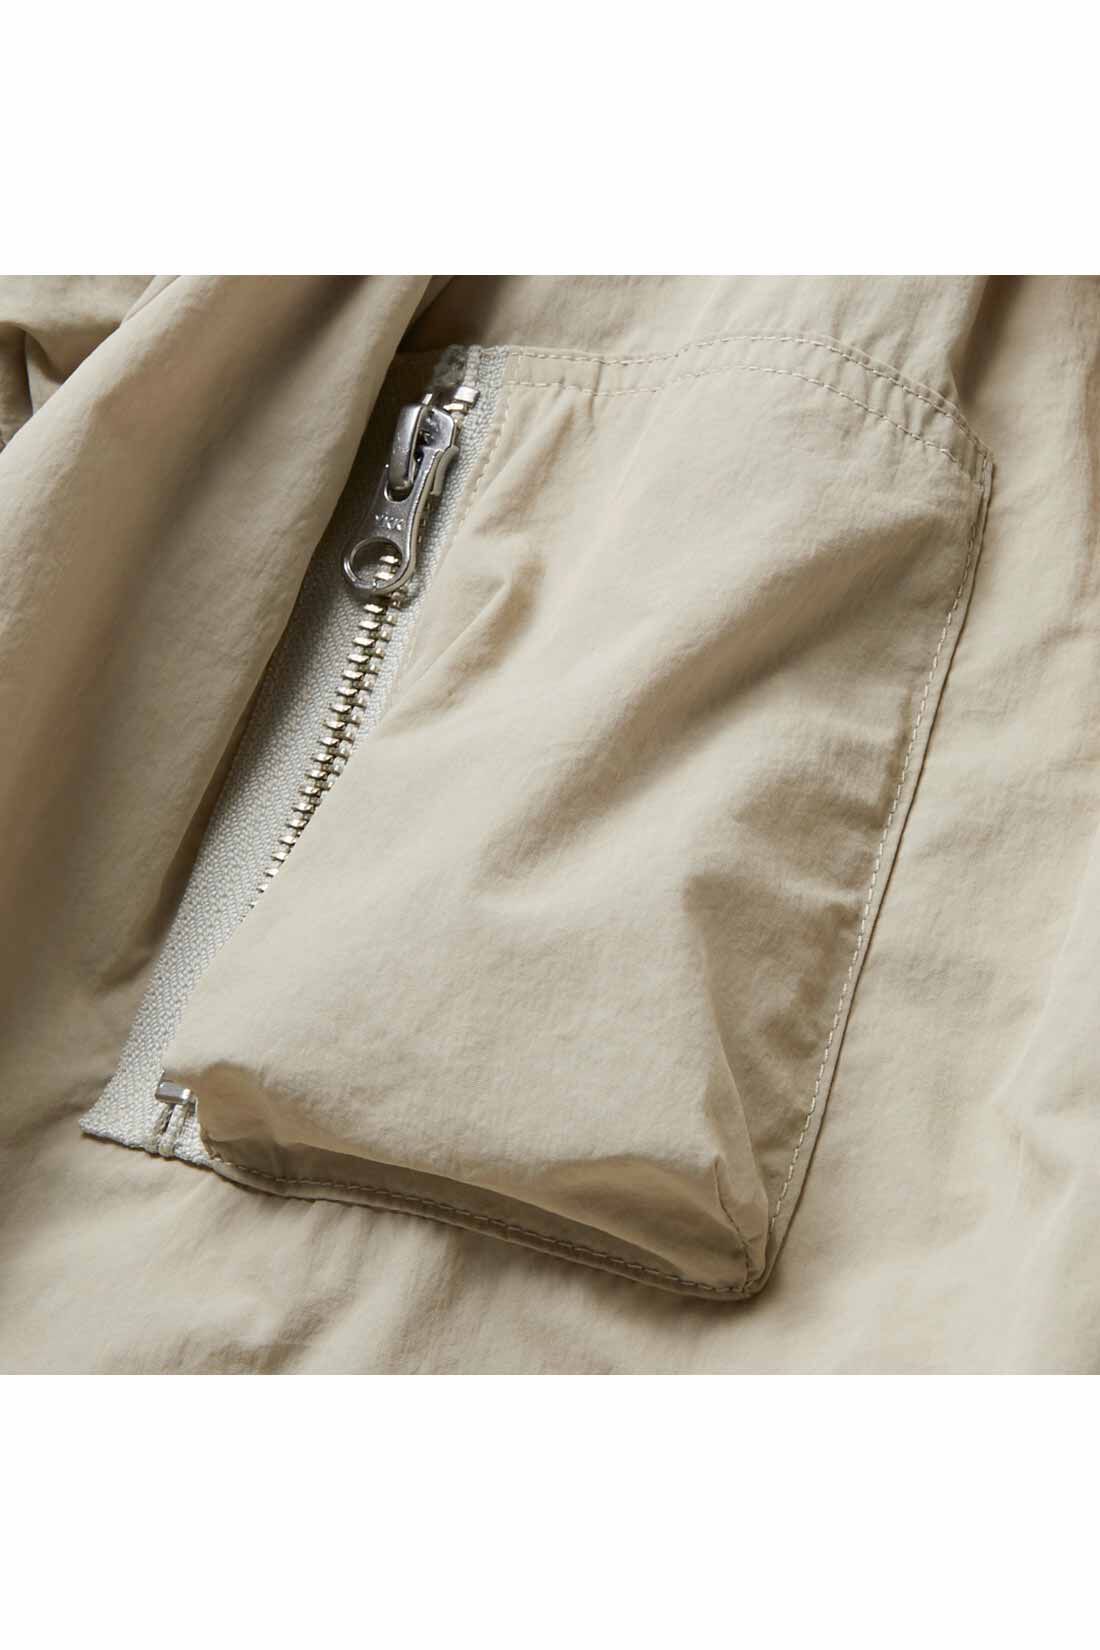 IEDIT|IEDIT[イディット]　小森美穂子さんコラボ フェミニンムードの中わた大人MA-1ジャケット〈グレージュ〉|肩口のタックでふくらみを出した袖は、立体ポケット付きの本格仕様。